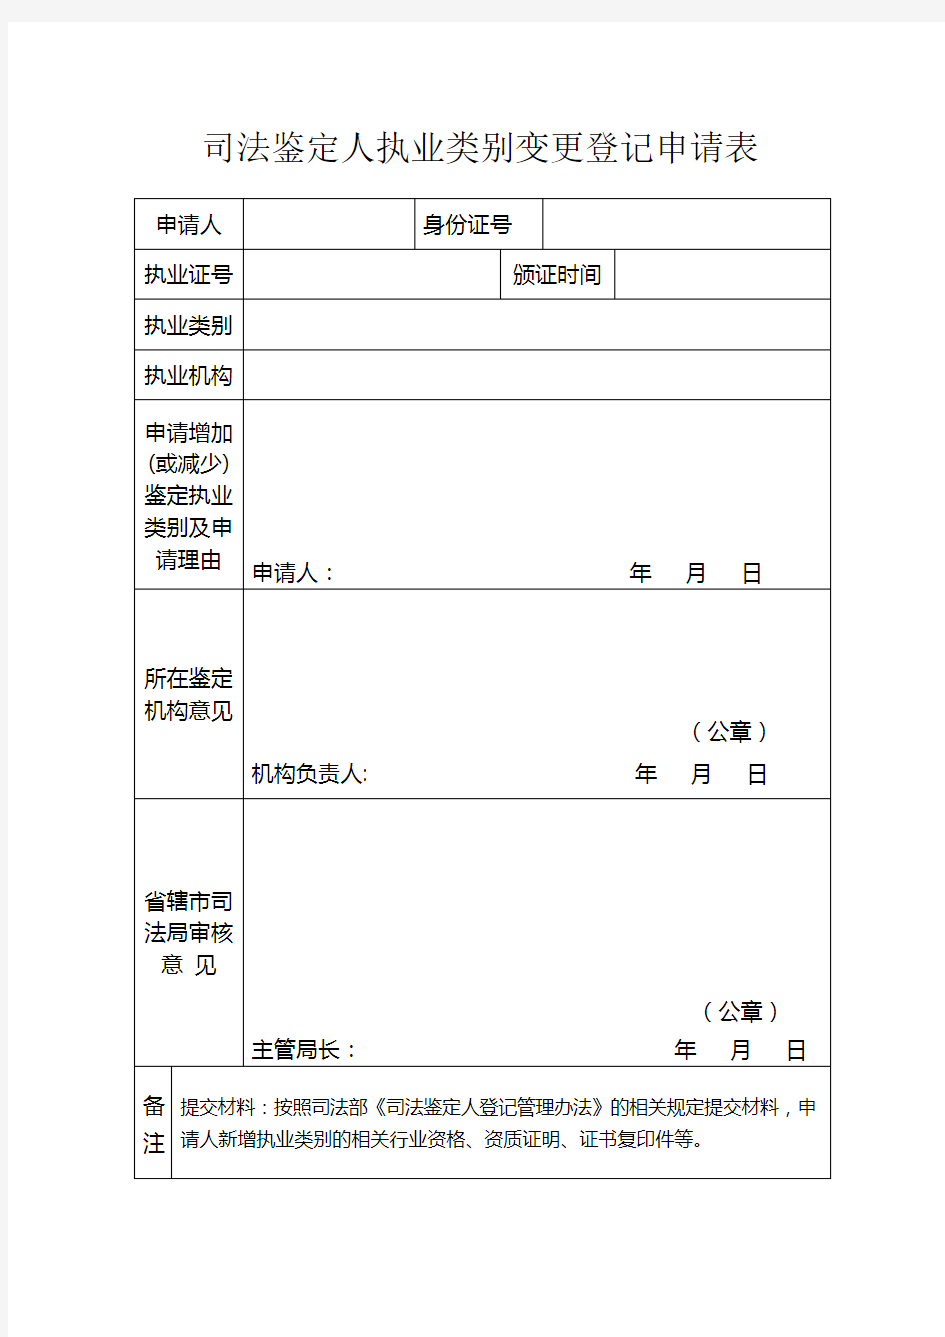 安徽省司法鉴定人执业类别变更登记申请表